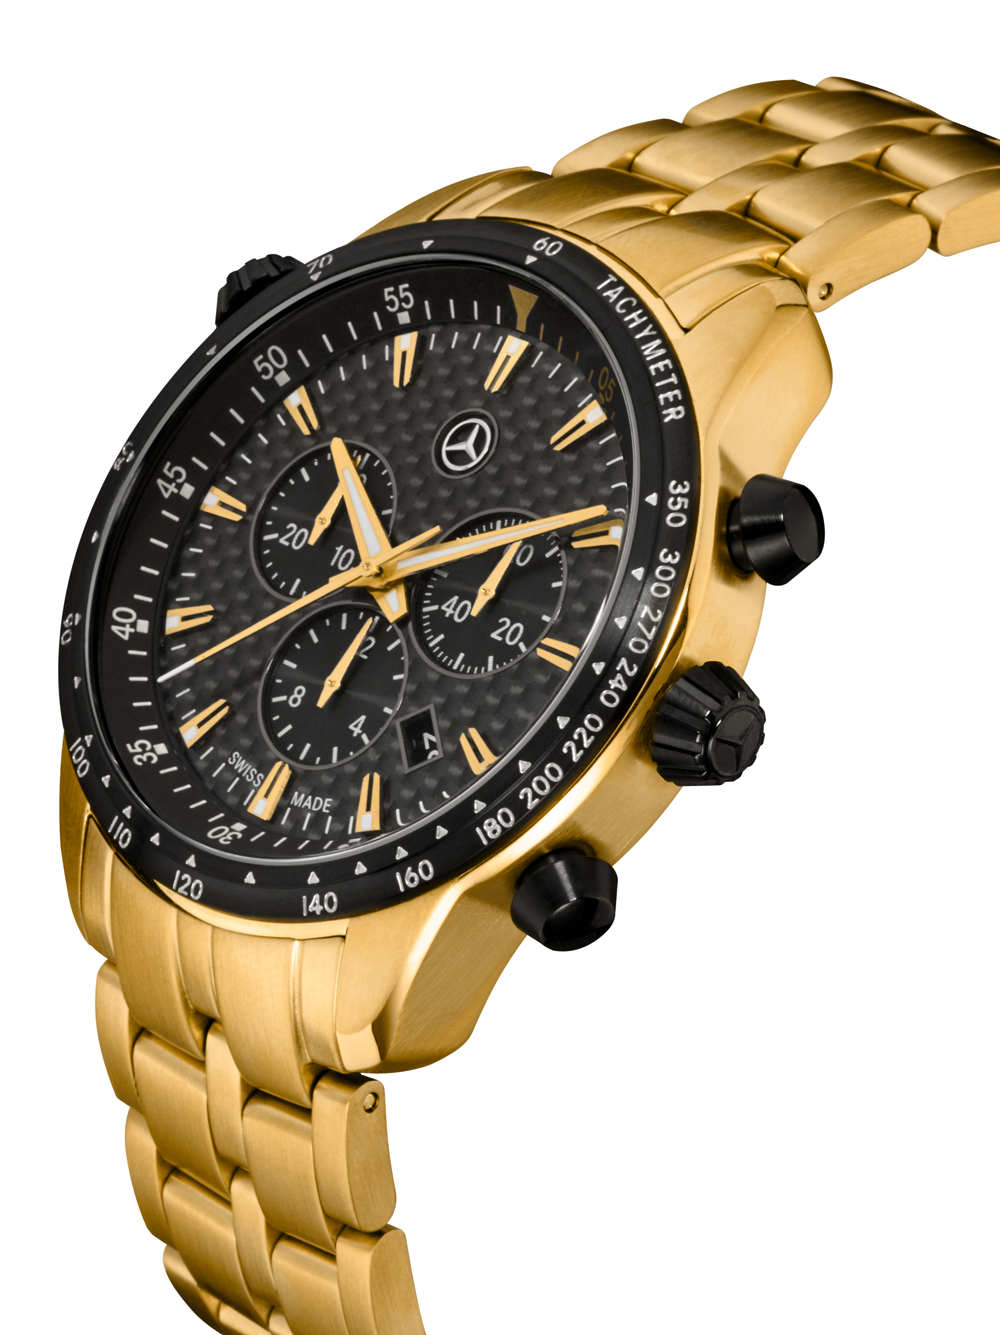 Мужские часы Motorsport, Gold Edition